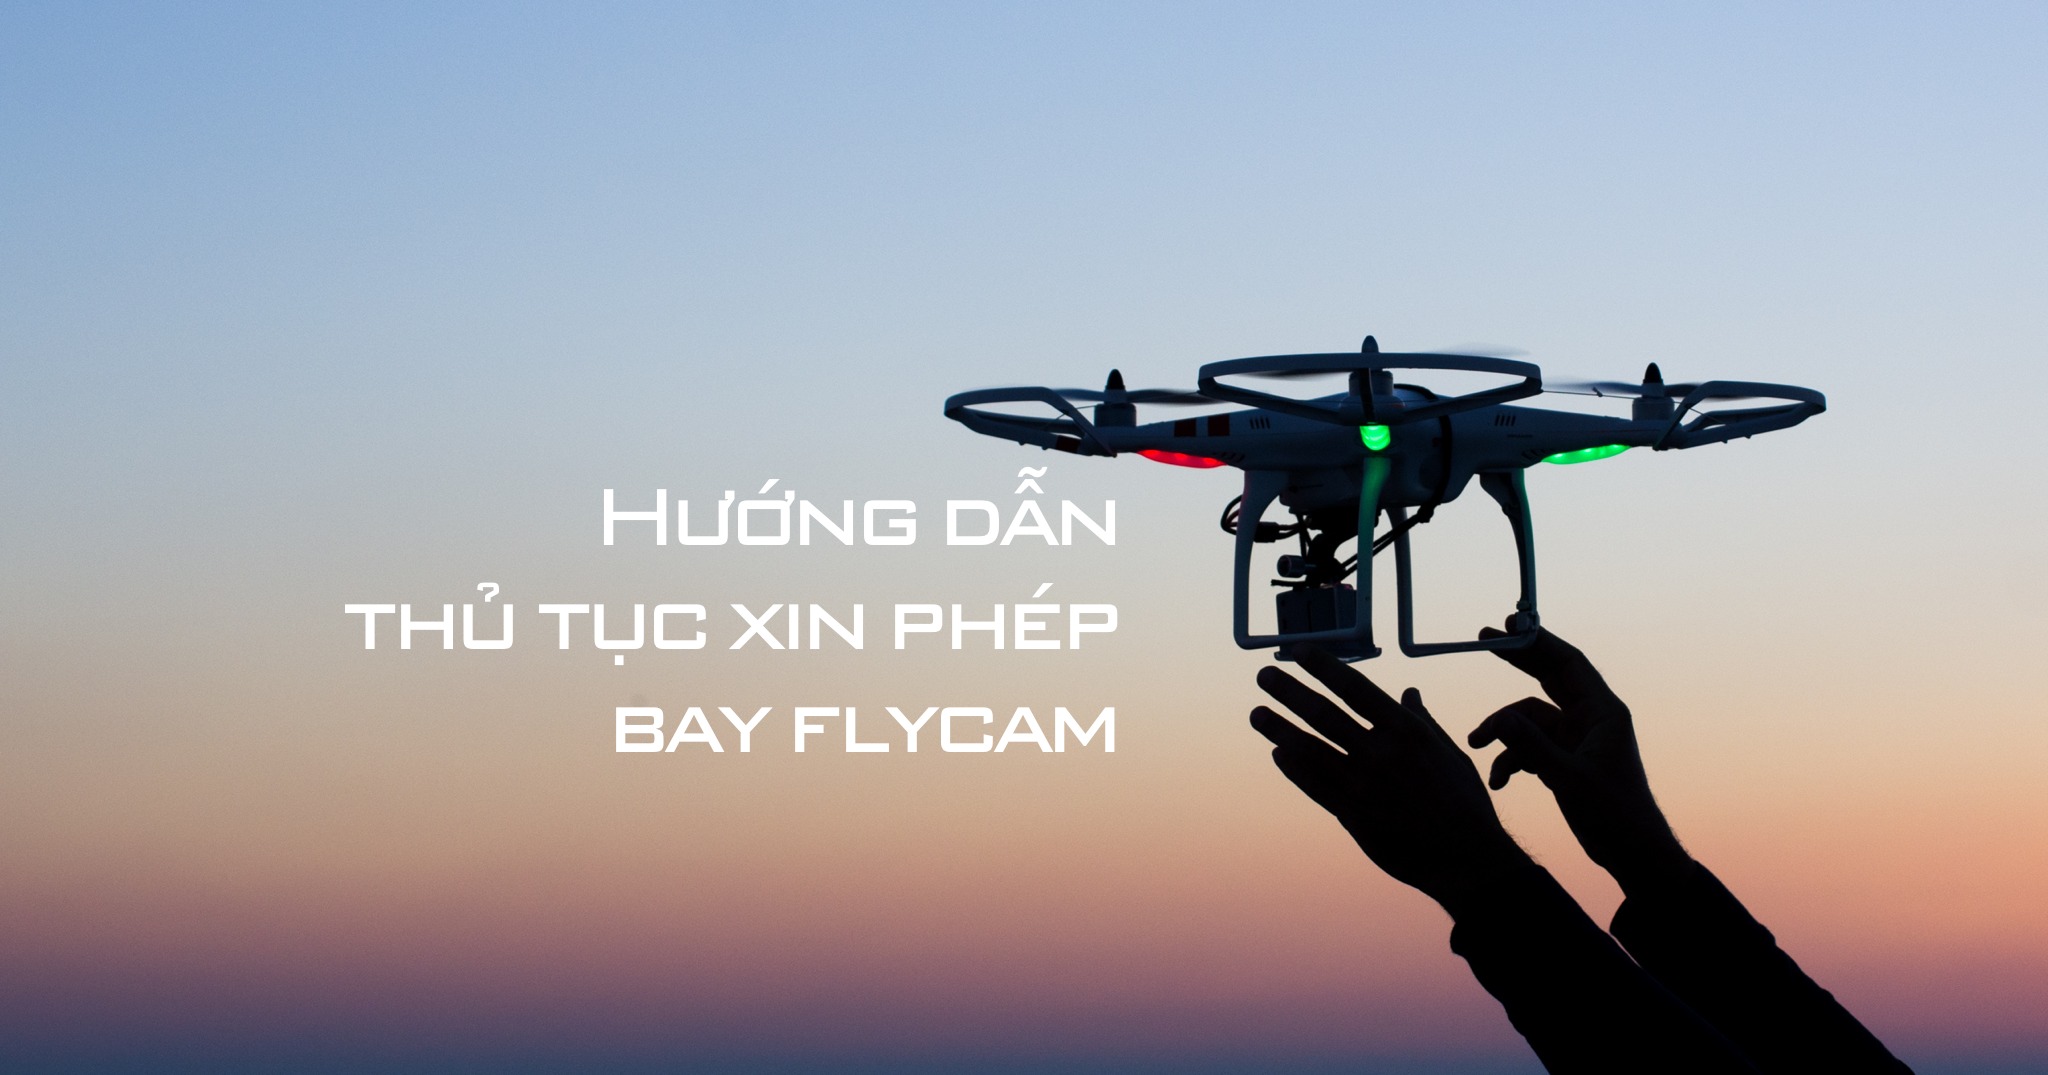 Hướng dẫn thủ tục xin phép bay drone, fly cam: Xin cục tác chiến, mất khoảng 5-7 ngày